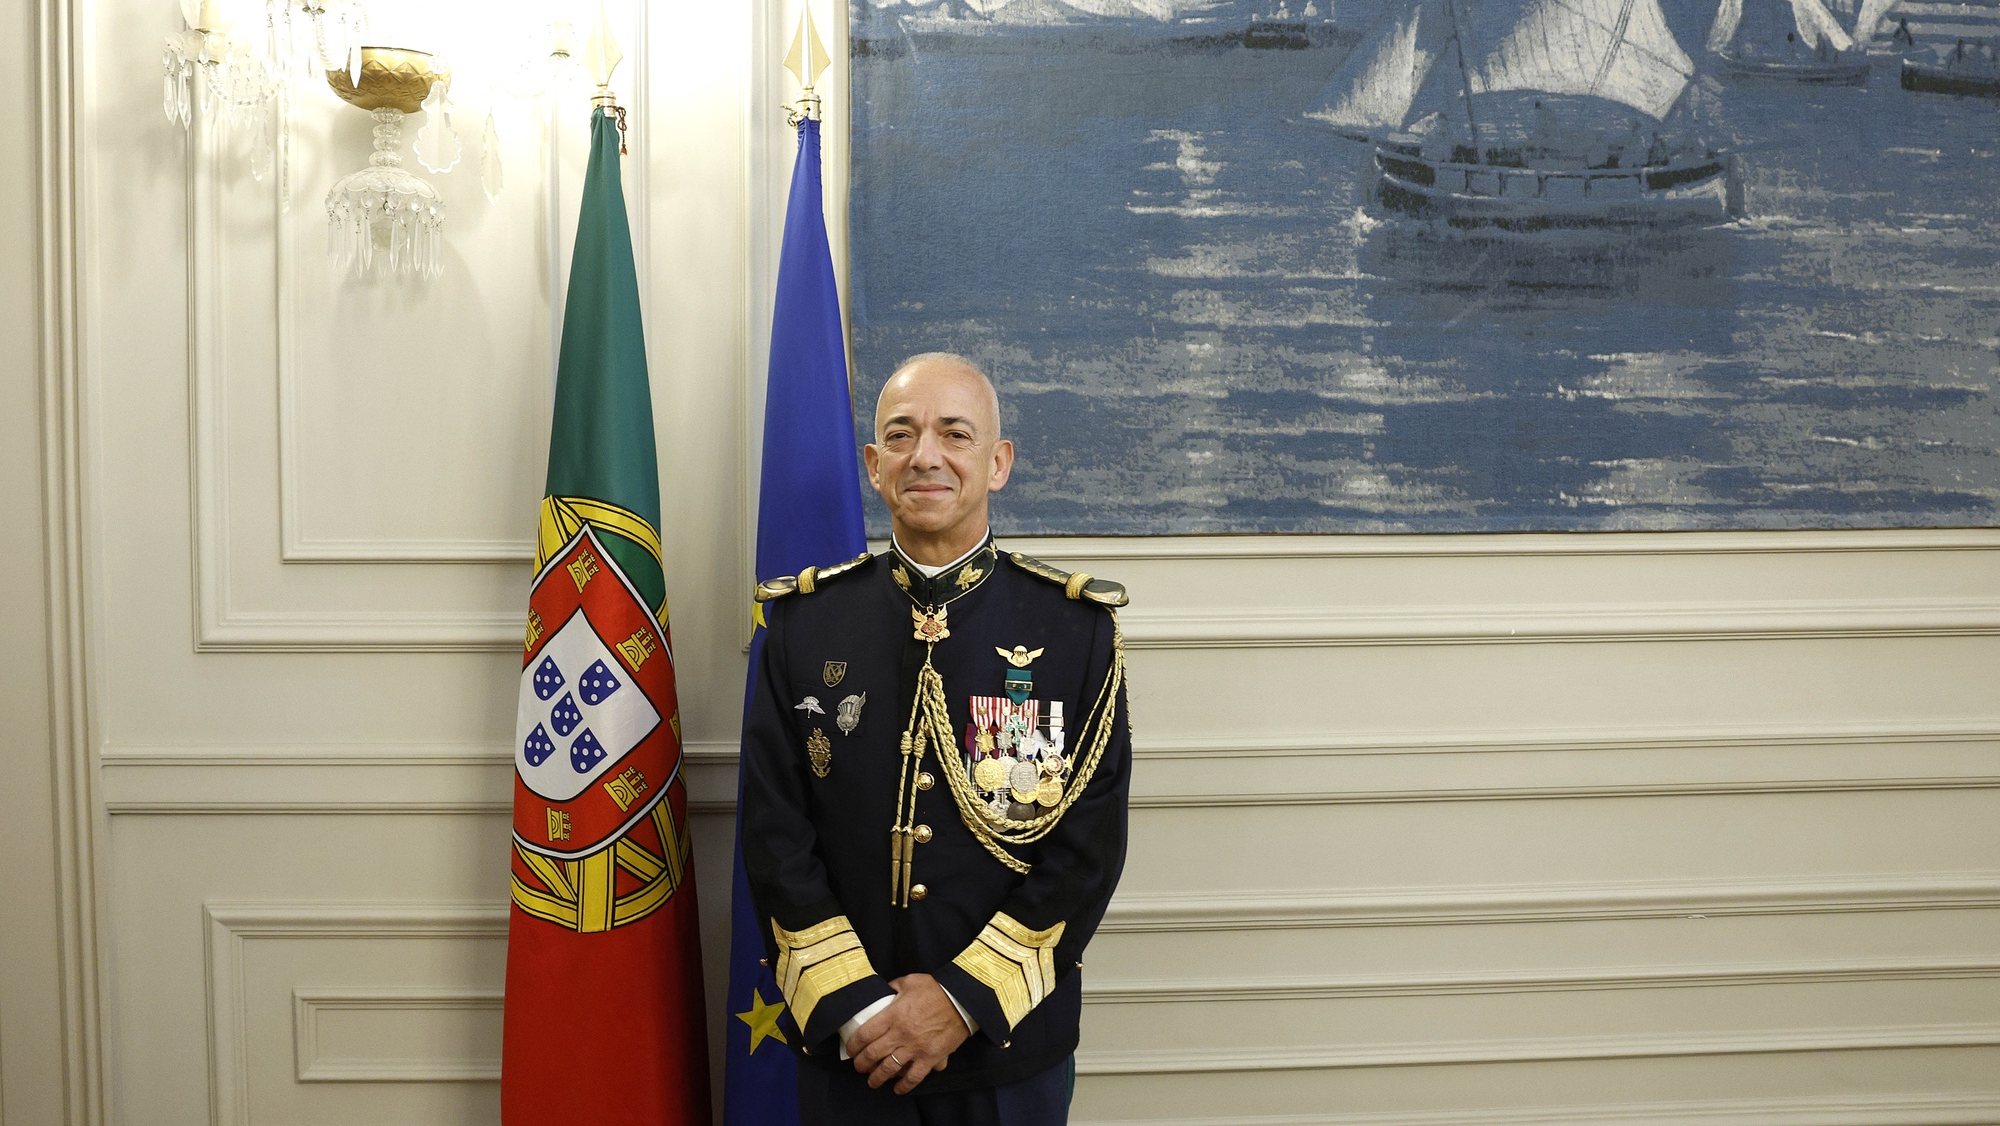 O novo comandante-geral da Guarda Nacional Republicana (GNR), tenente-general José Manuel Santos Correia, posa para a fotografia na cerimónia de tomada de posse, em Lisboa, 22 de novembro de 2022. ANTÓNIO PEDRO SANTOS/LUSA